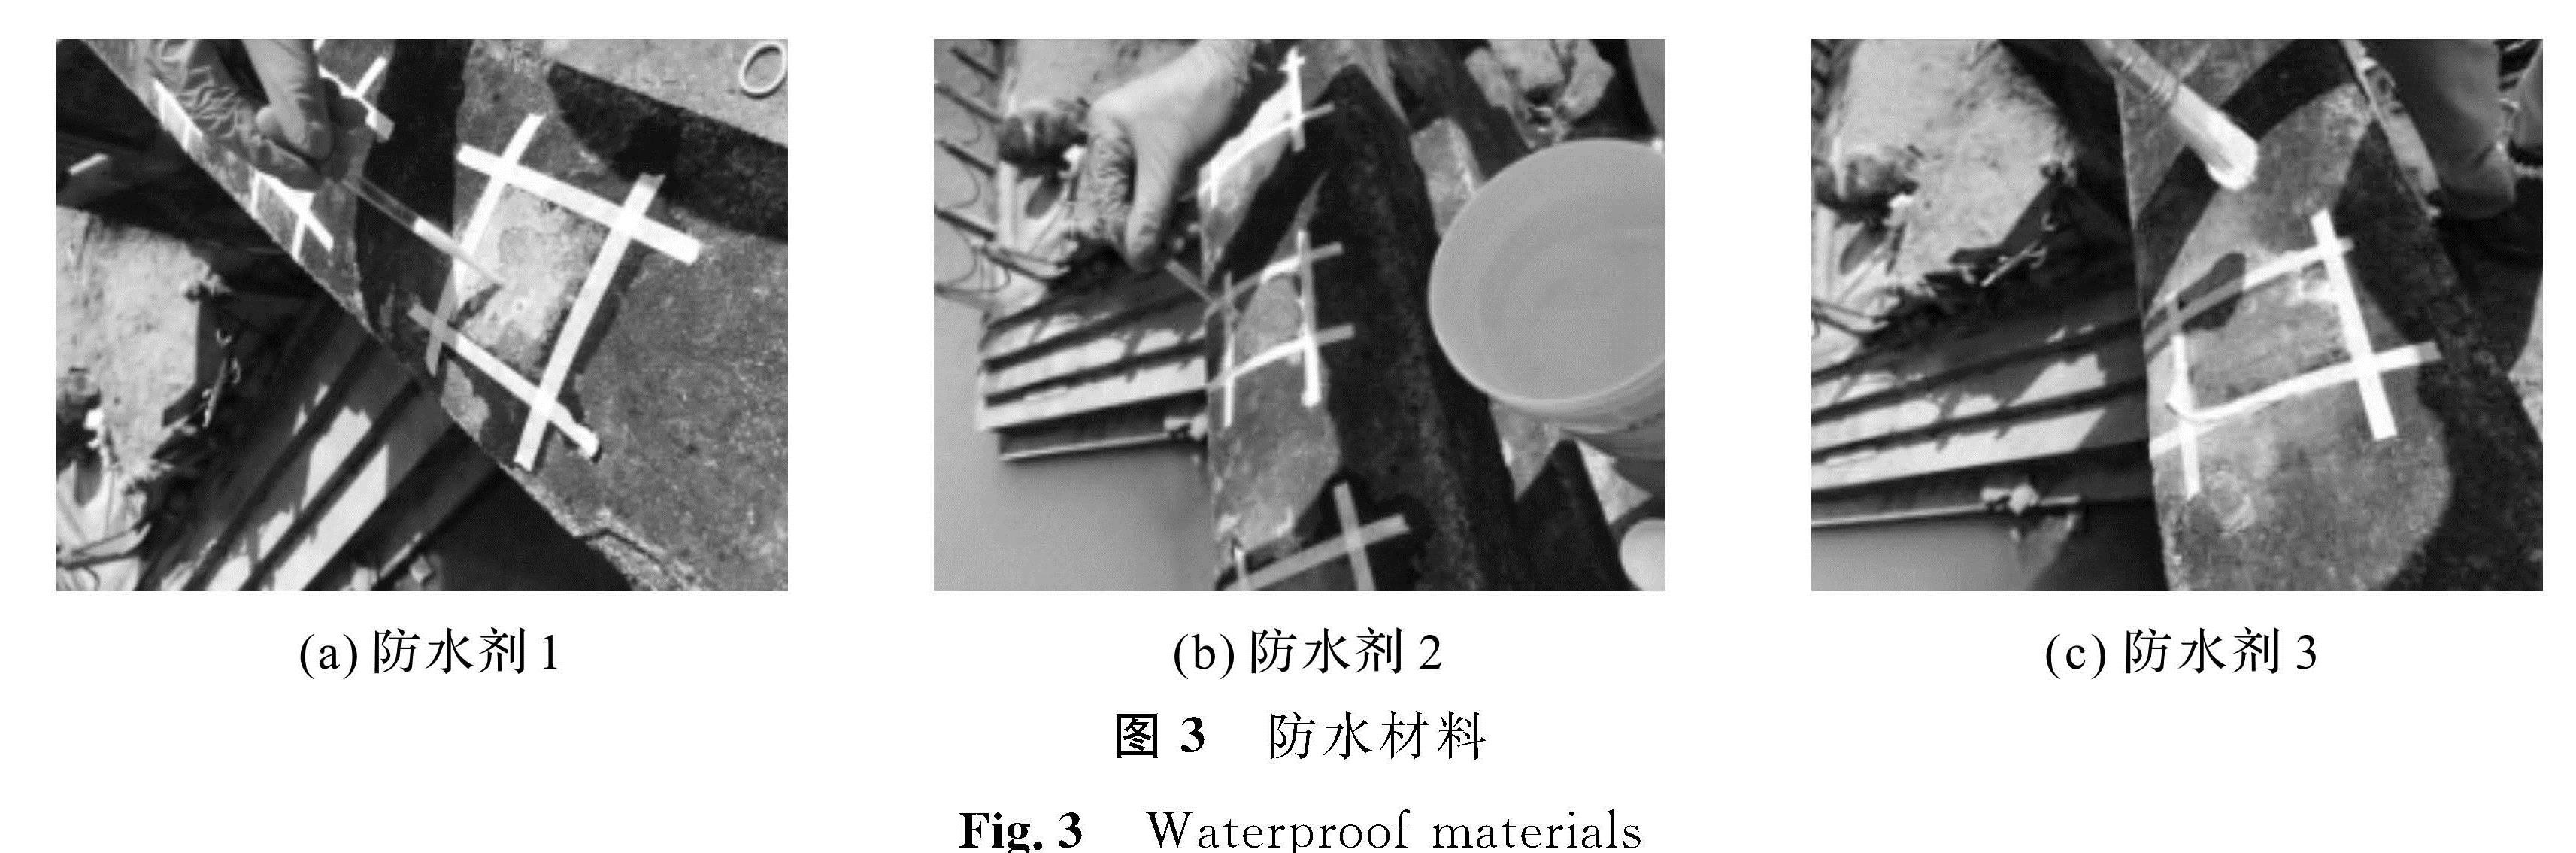 图3 防水材料<br/>Fig.3 Waterproof materials